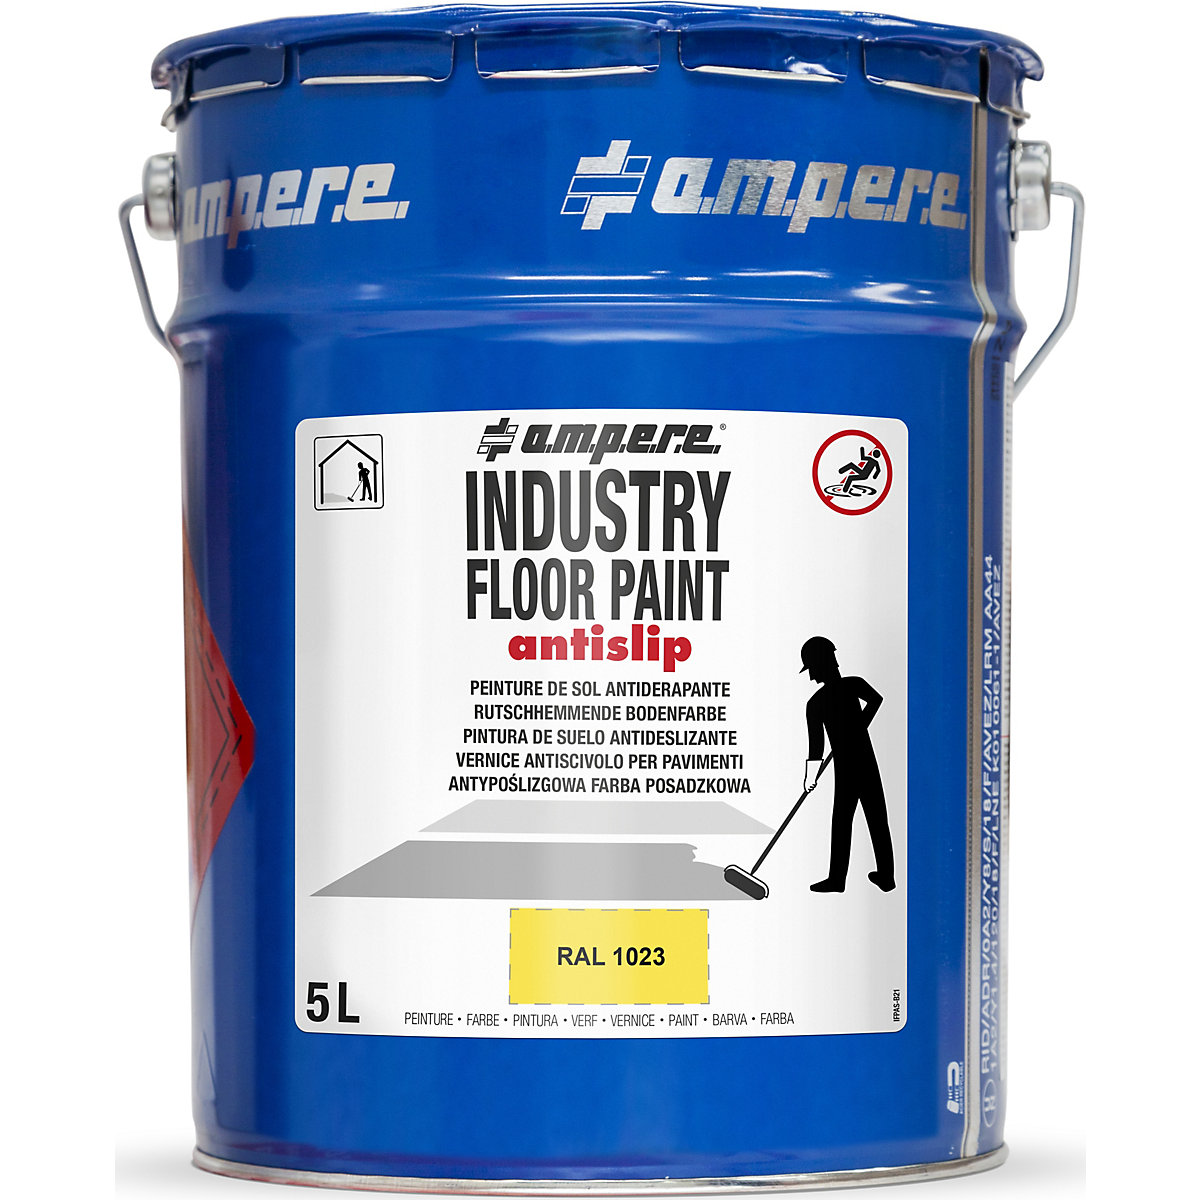 Peinture de marquage des sols Industry Floor Paint antislip® – Ampere, contenu 5 l, jaune